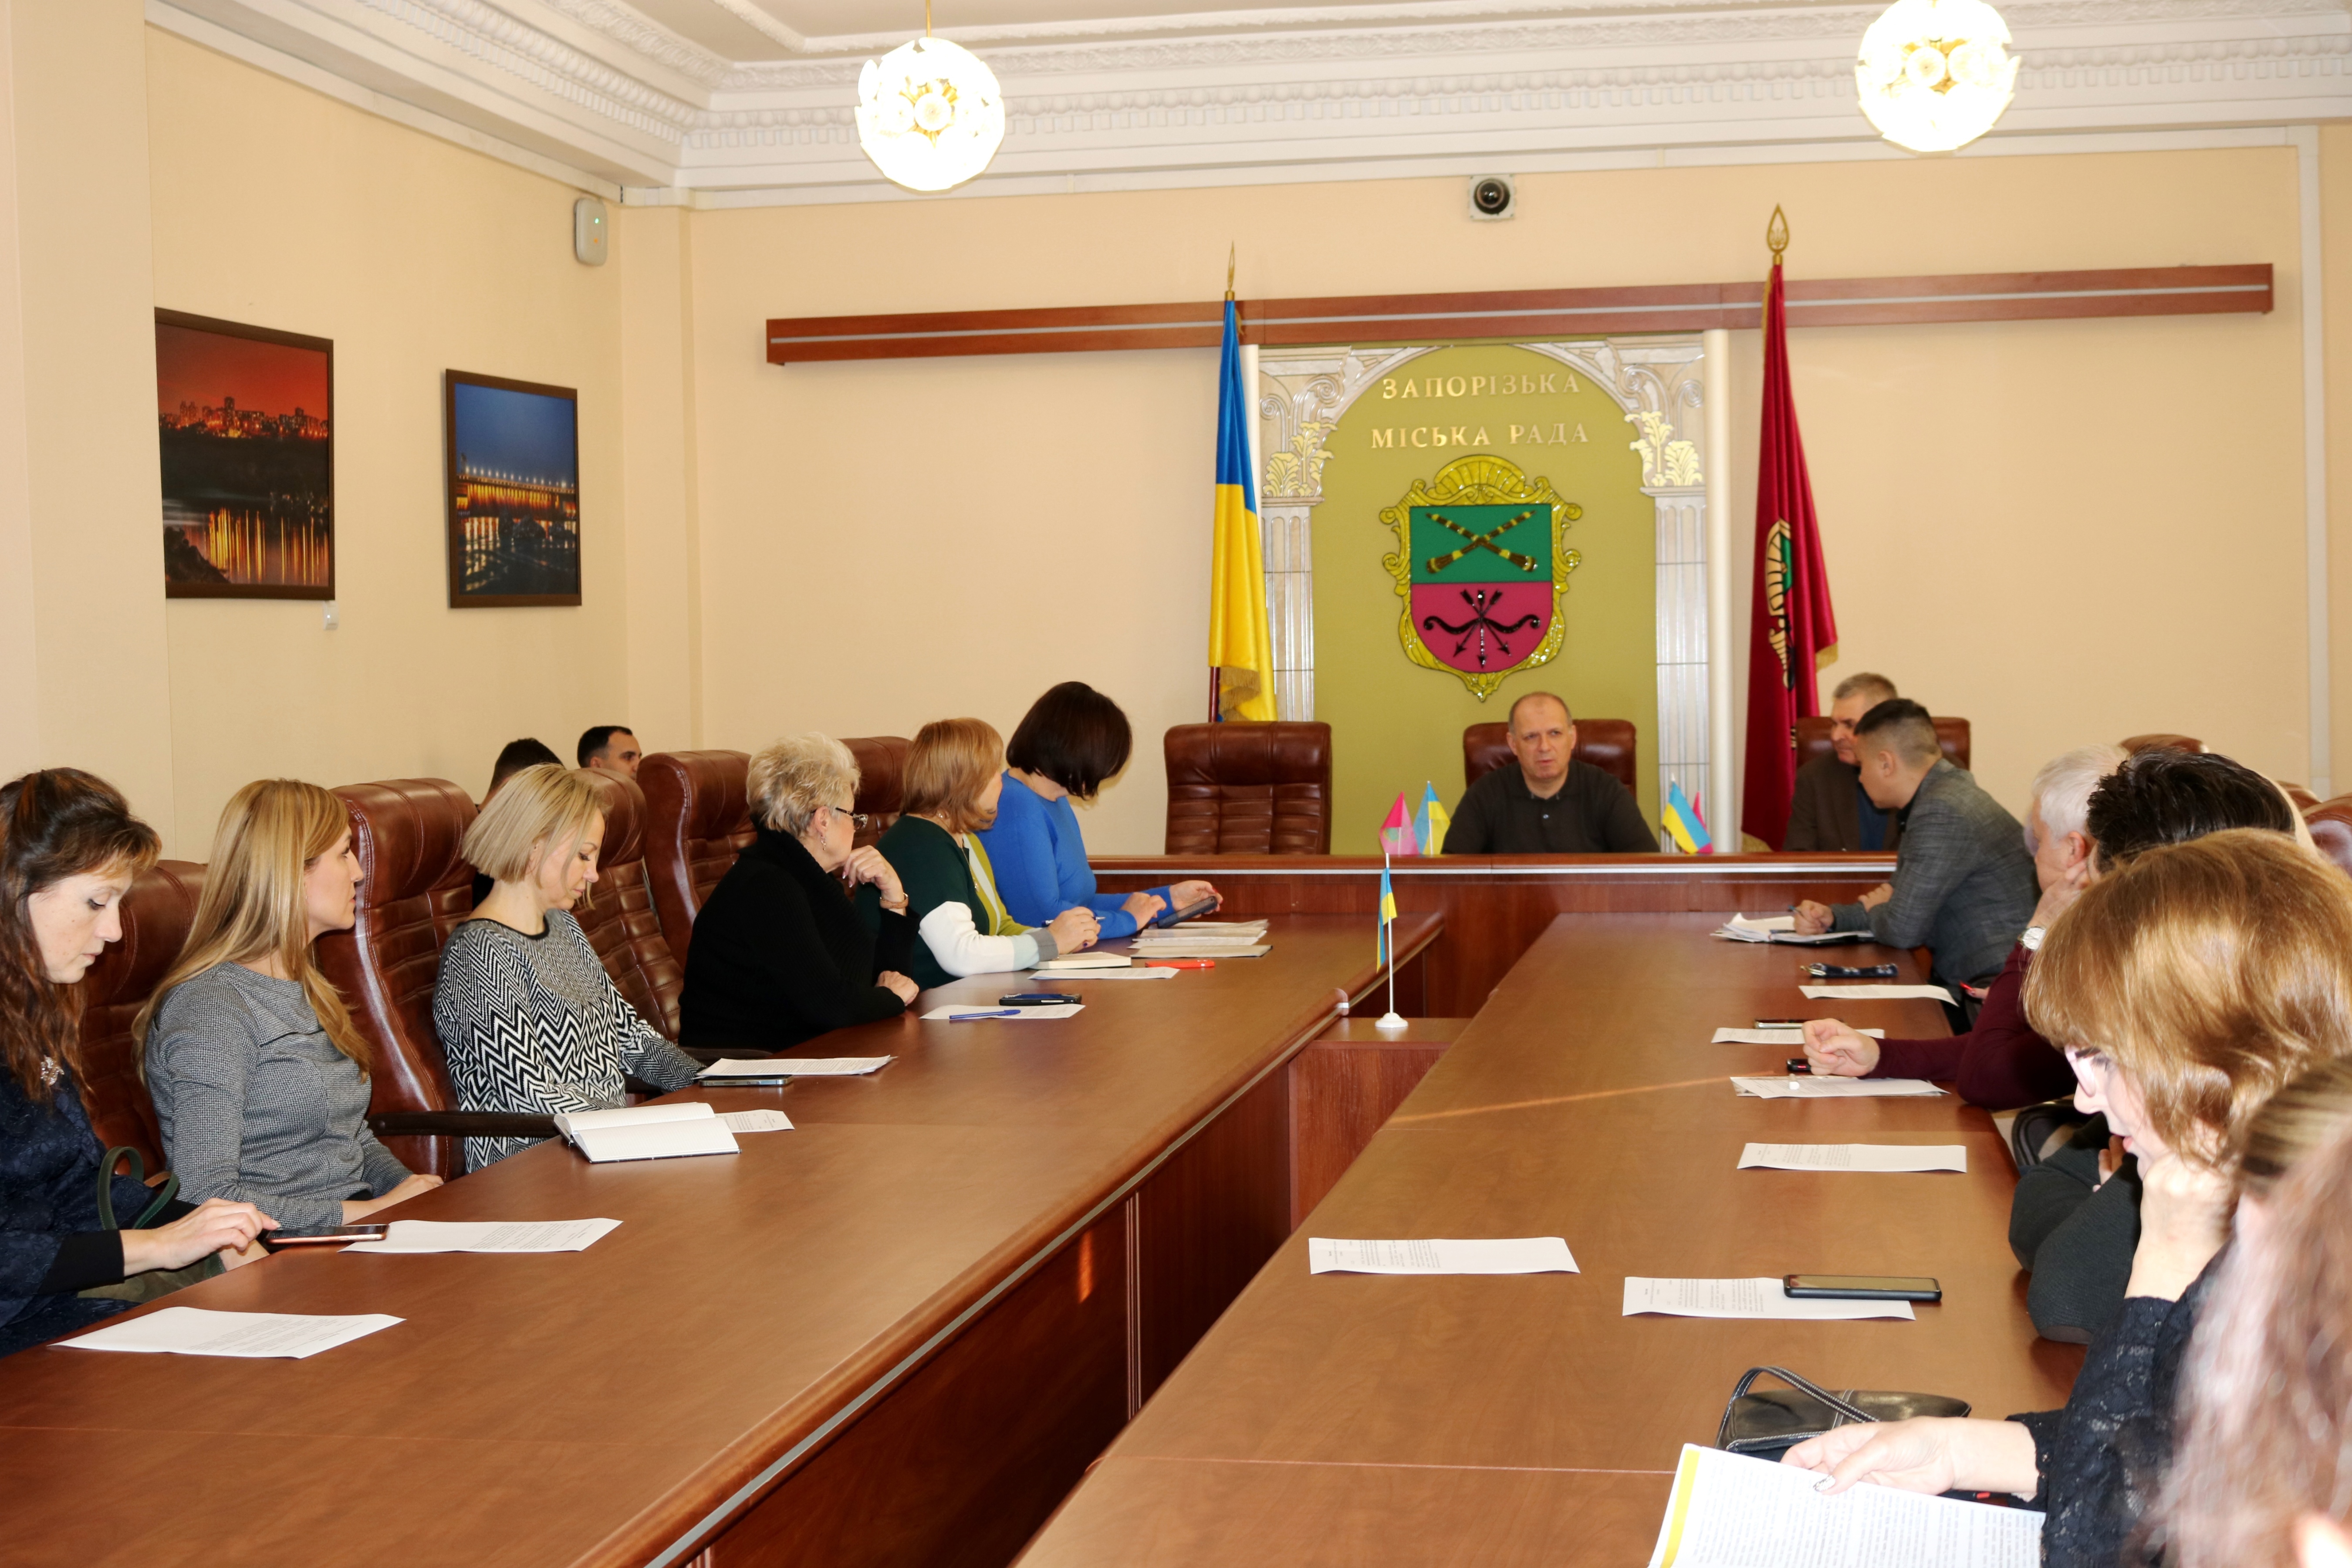 Вчора (26.12.23) відбулось засідання міської координаційної ради з питань розвитку підприємництва, до сладу якої також входять предсавники Бізнес-Союз "Порада".